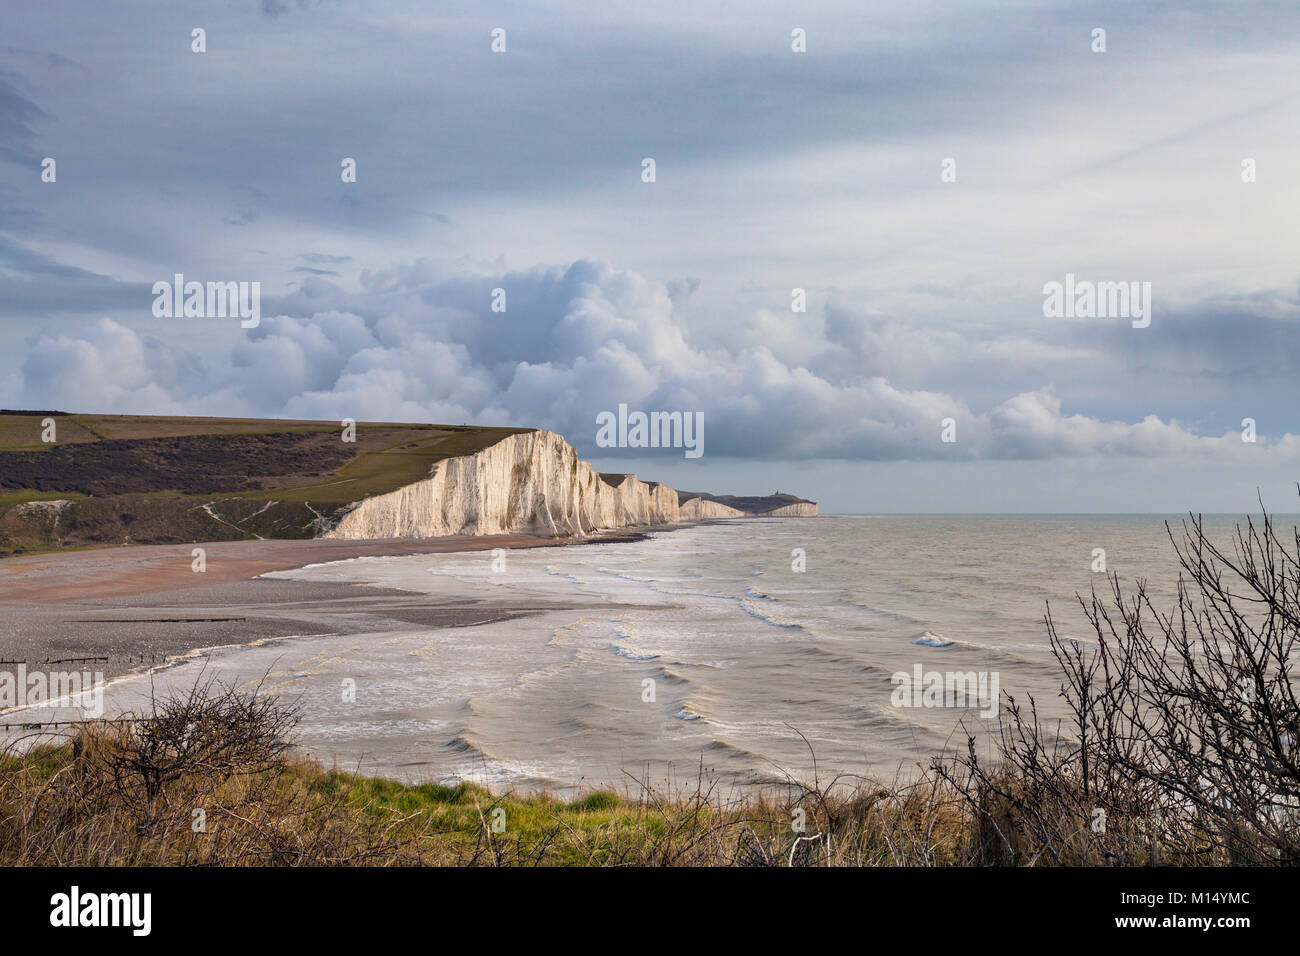 Les sept soeurs des falaises de craie près de Seaford, East Sussex, England, UK Banque D'Images